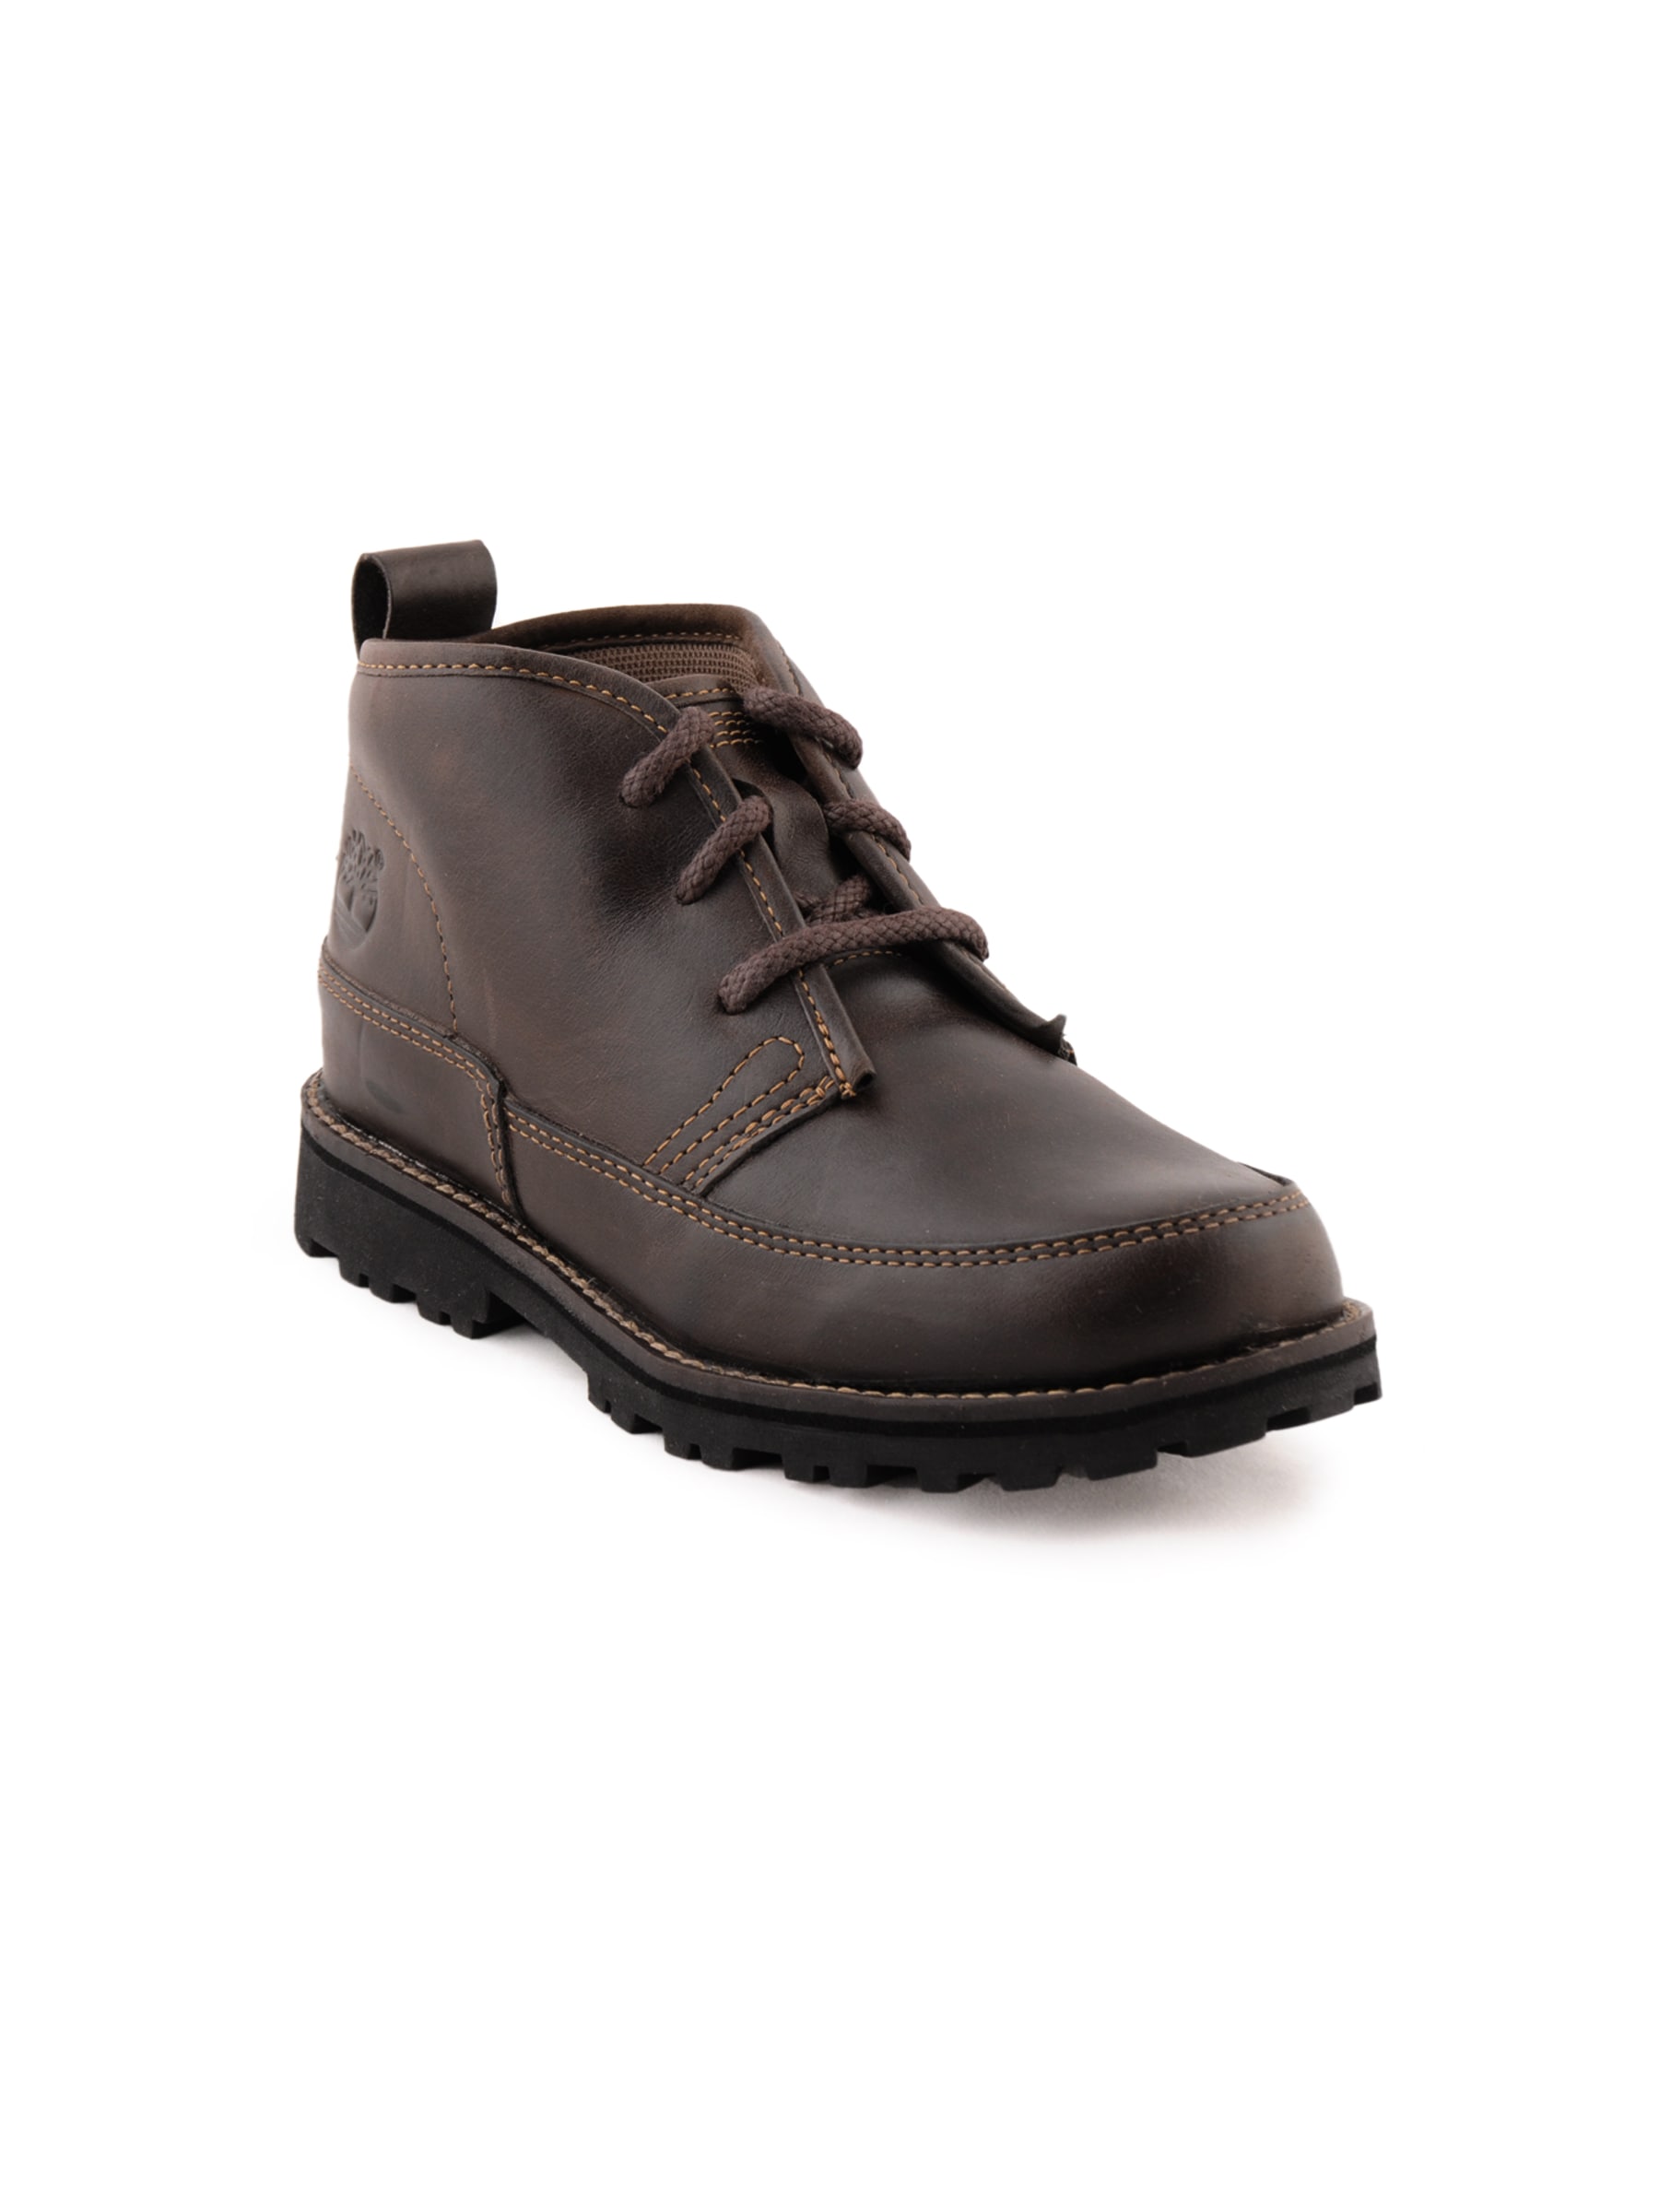 Timberland Men Jeunes Brown Casual Shoes